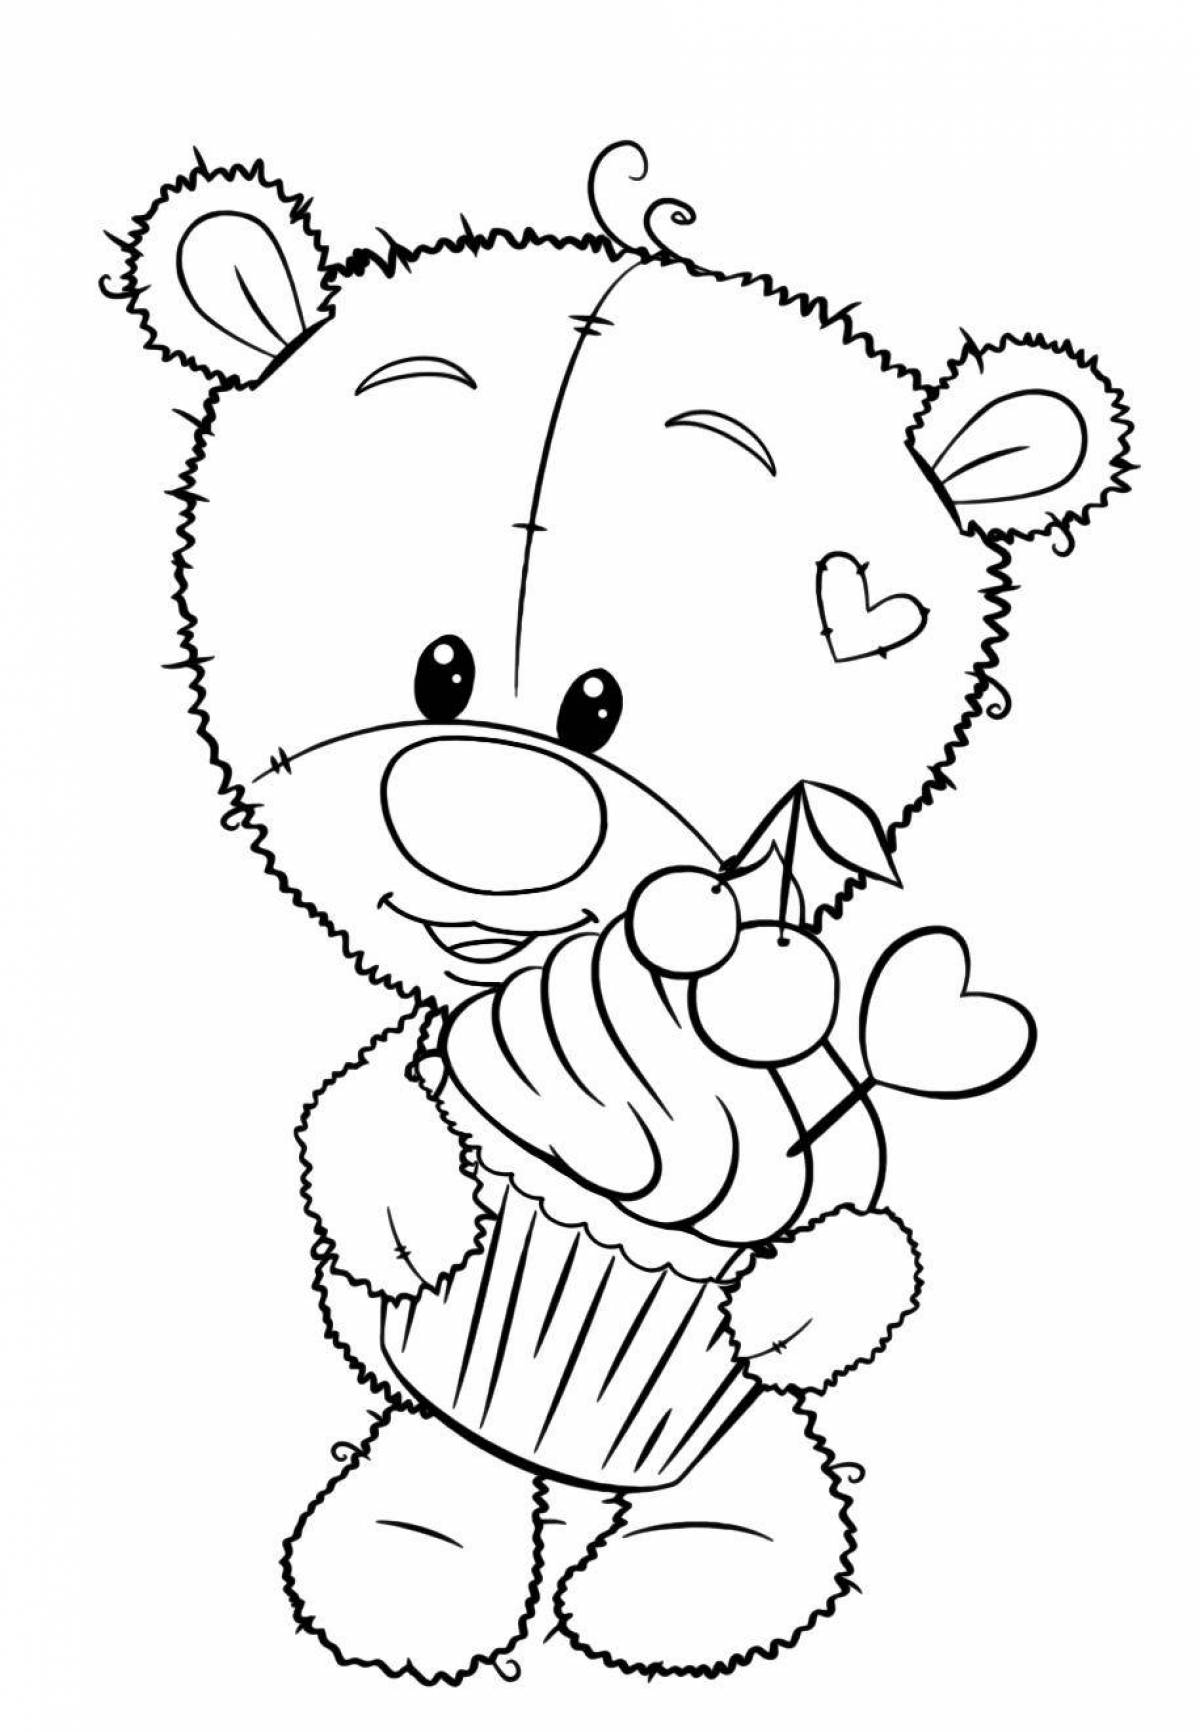 Coloring wavy teddy bear